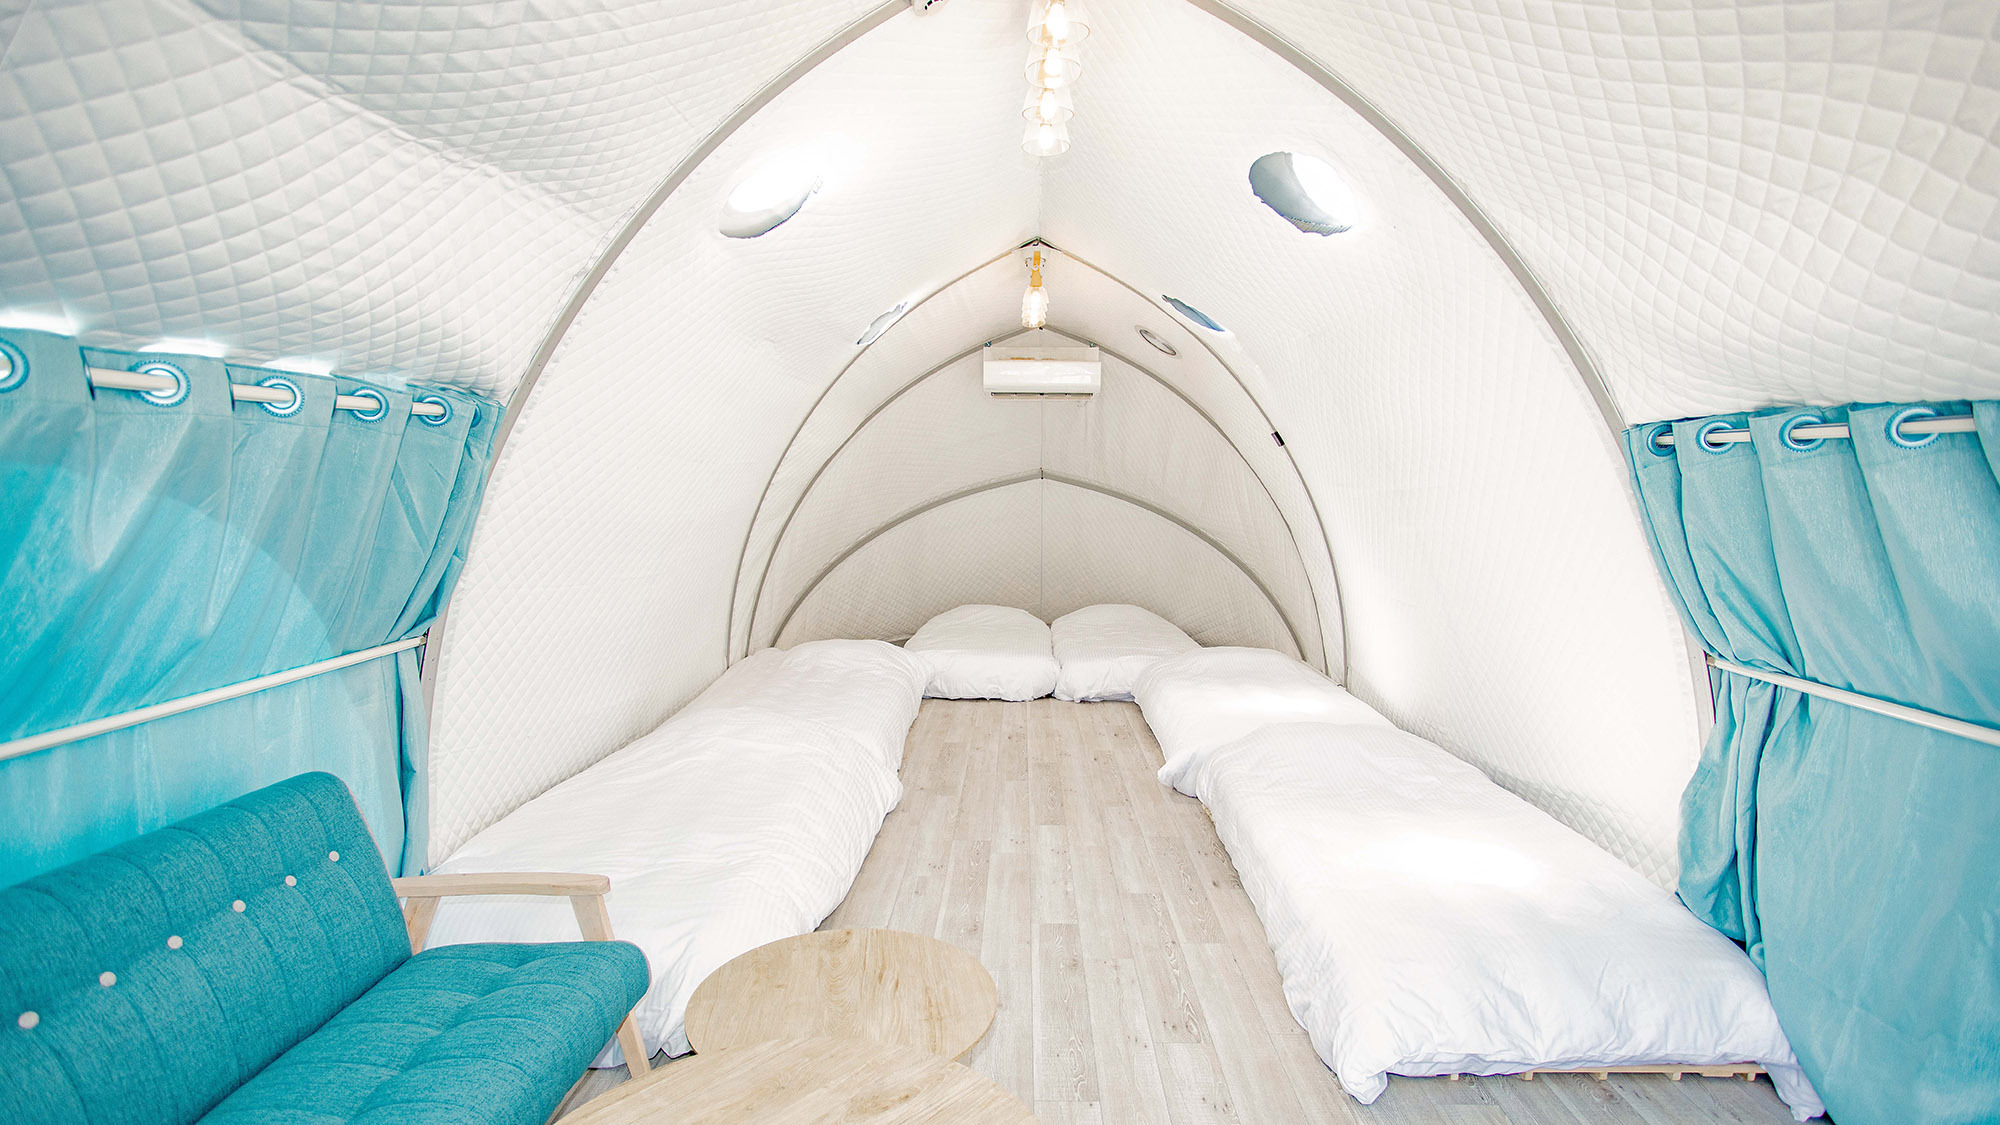 ・【グループドーム】最大6名宿泊可能なドームテント。大人数のグループ様も歓迎です